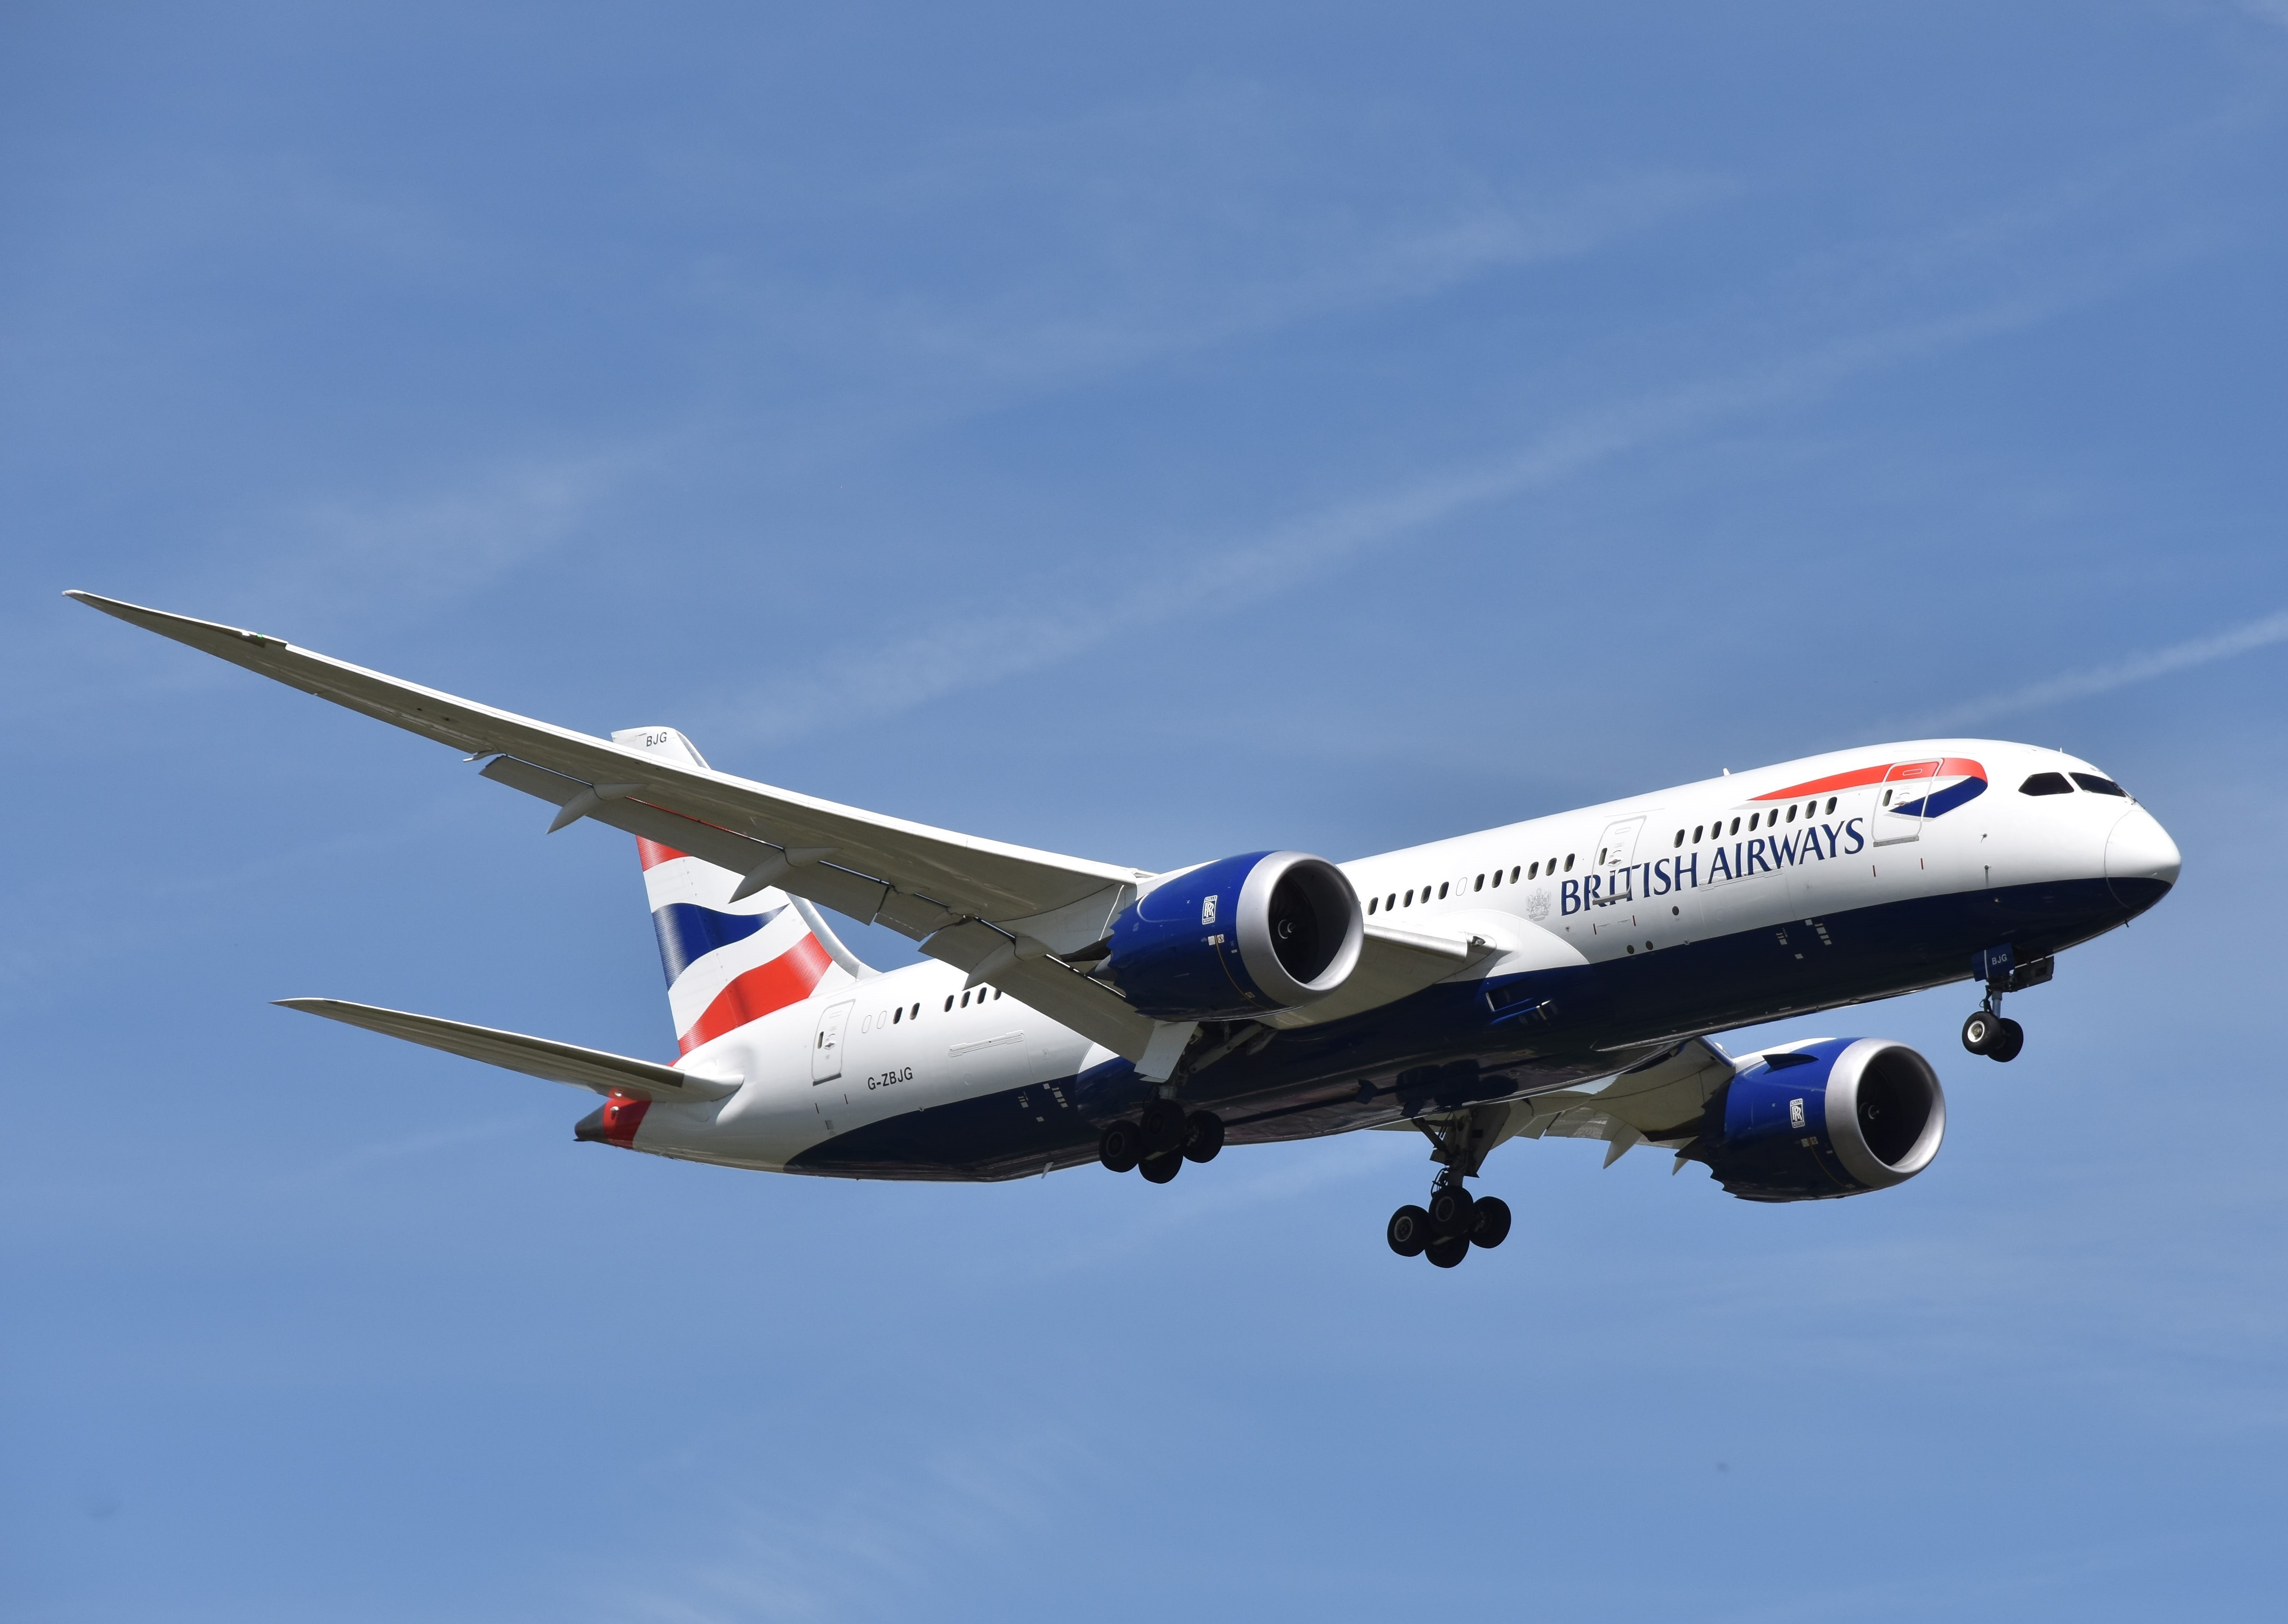 G-ZBJG/GZBJG British Airways Boeing 787 Airframe Information - AVSpotters.com